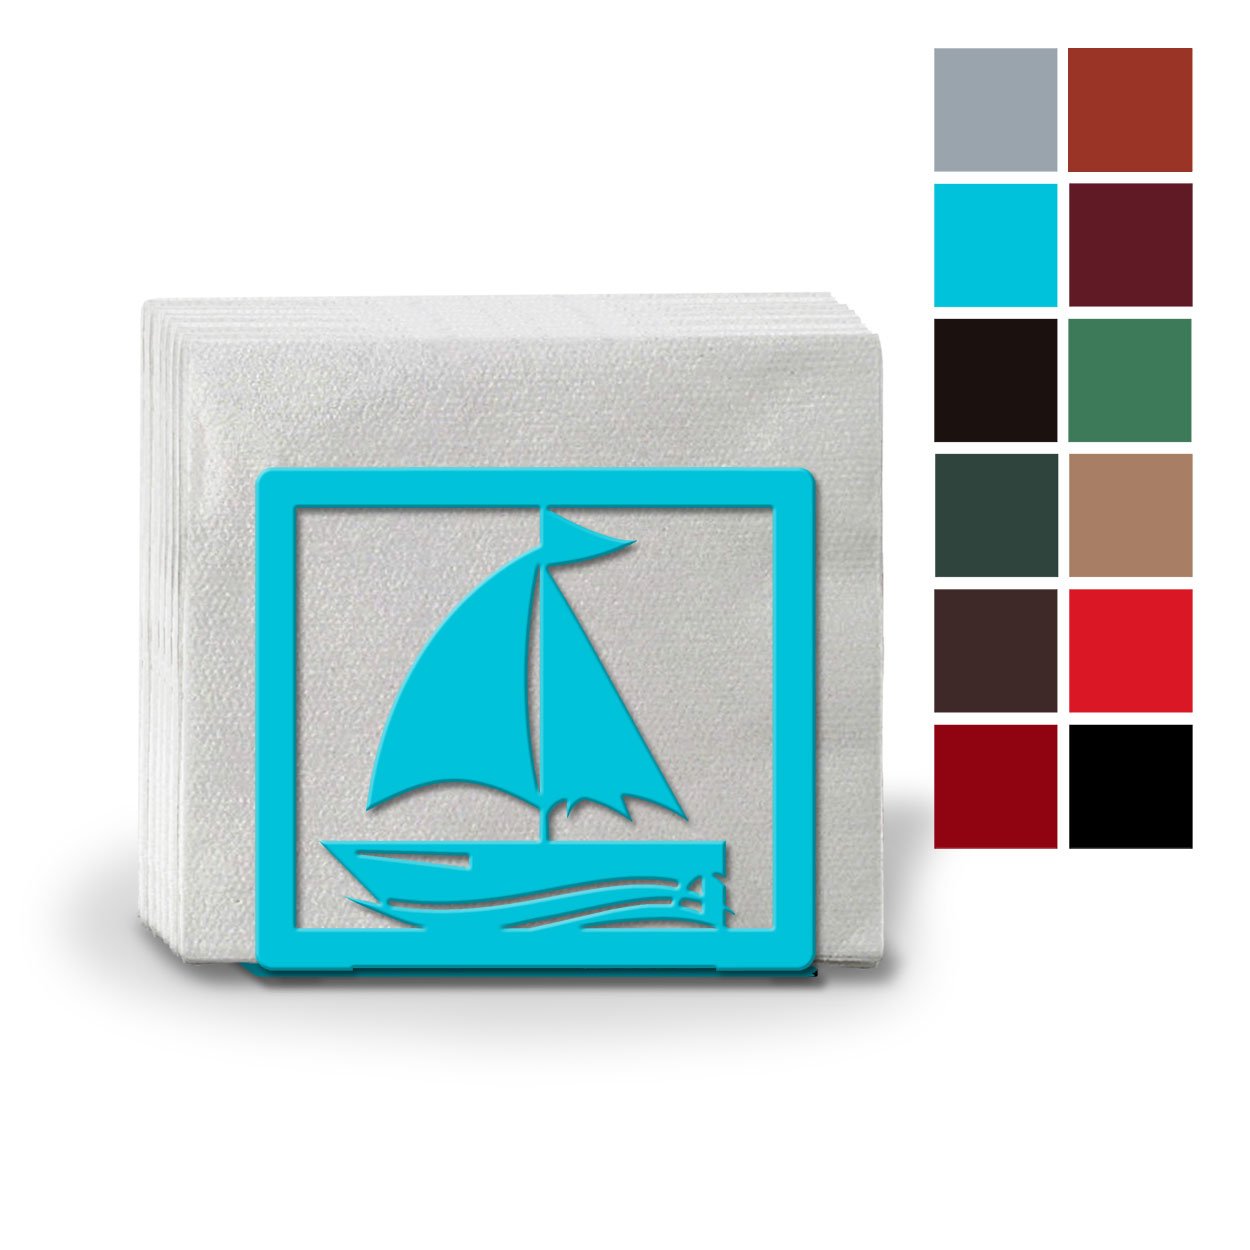 621120 - Sailboat Metal Napkin or Letter Holder - Choose Color